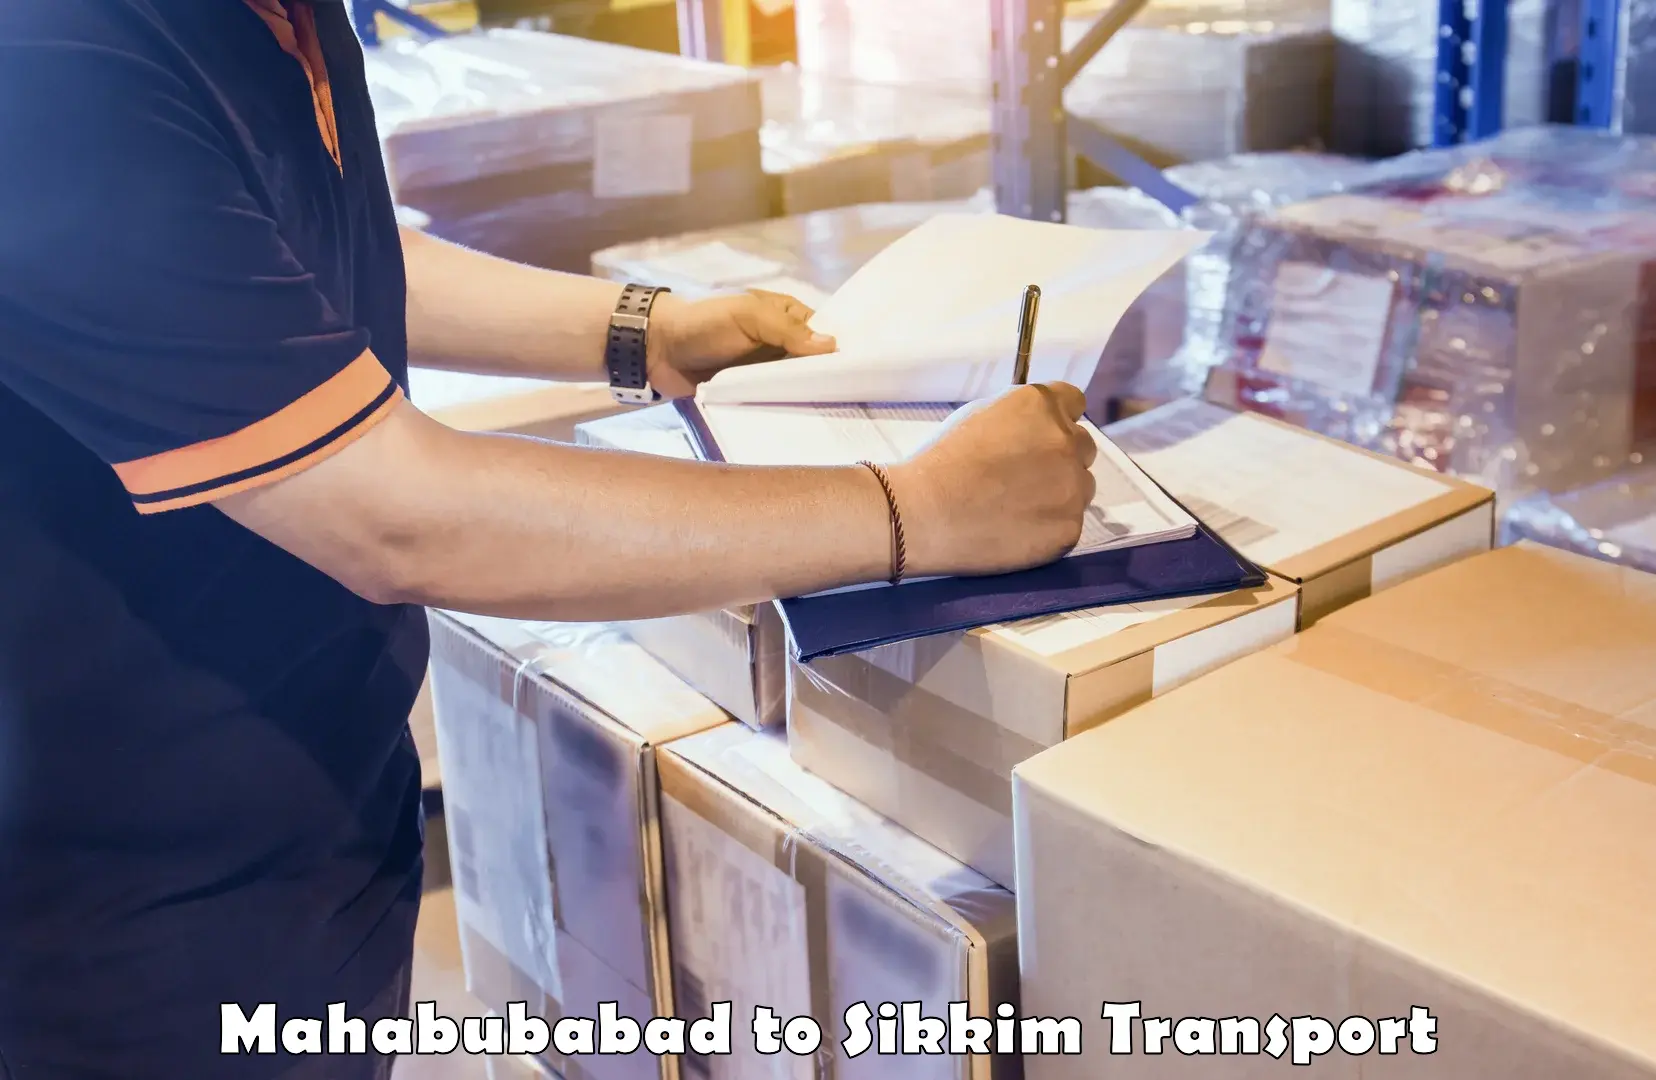 International cargo transportation services Mahabubabad to NIT Sikkim